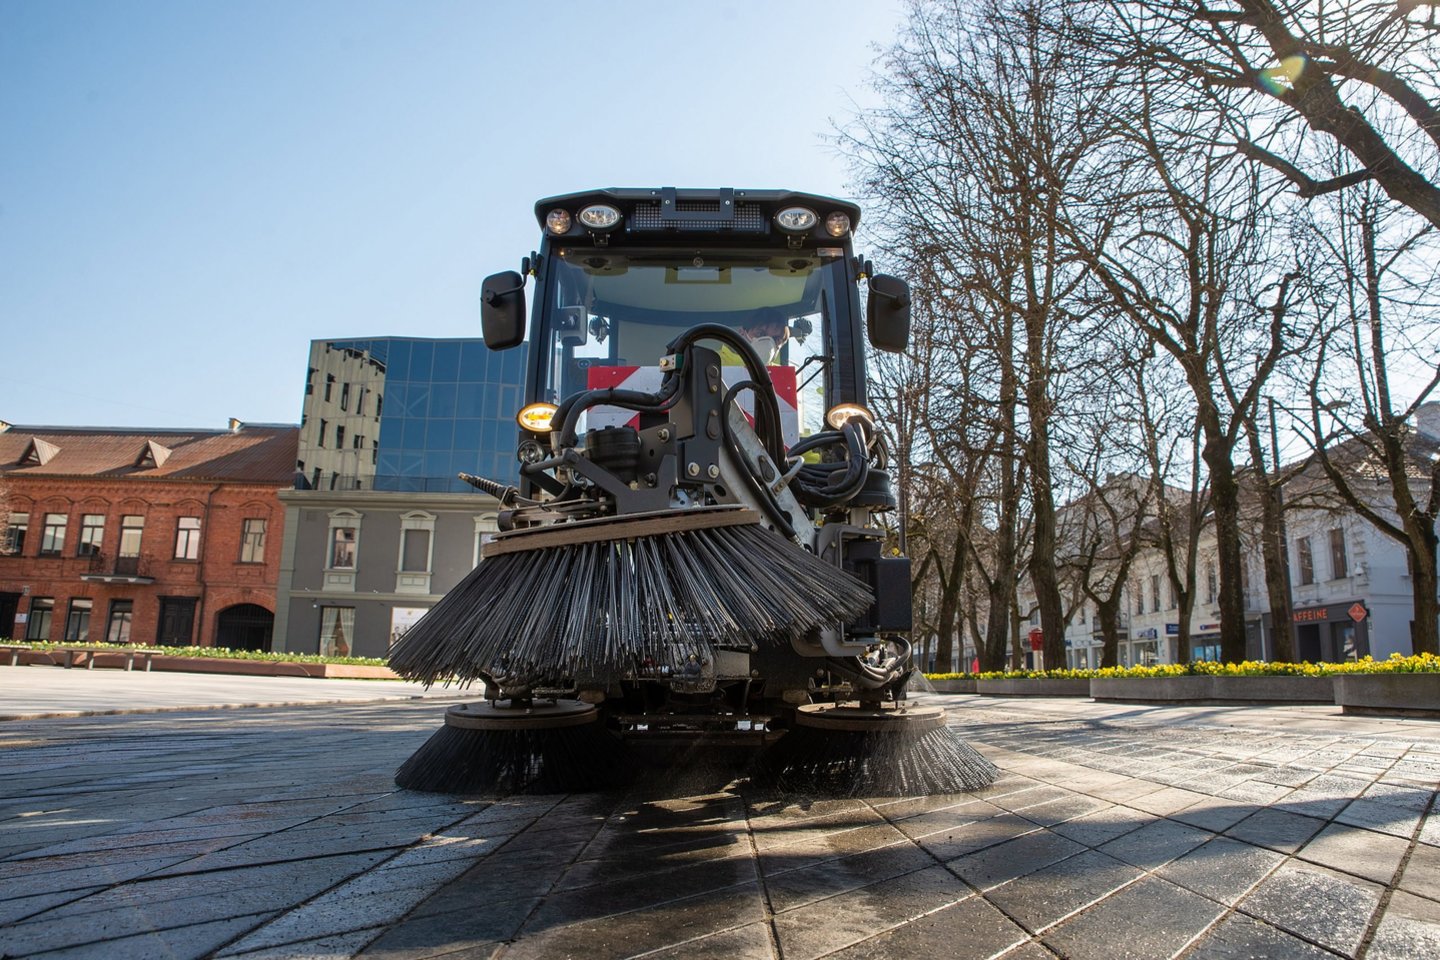 Jau pirma balandžio savaitė parodė, kad Kauno investicija į valymo techniką yra laiku ir vietoje.<br> Kauno miesto savivaldybės nuotr.